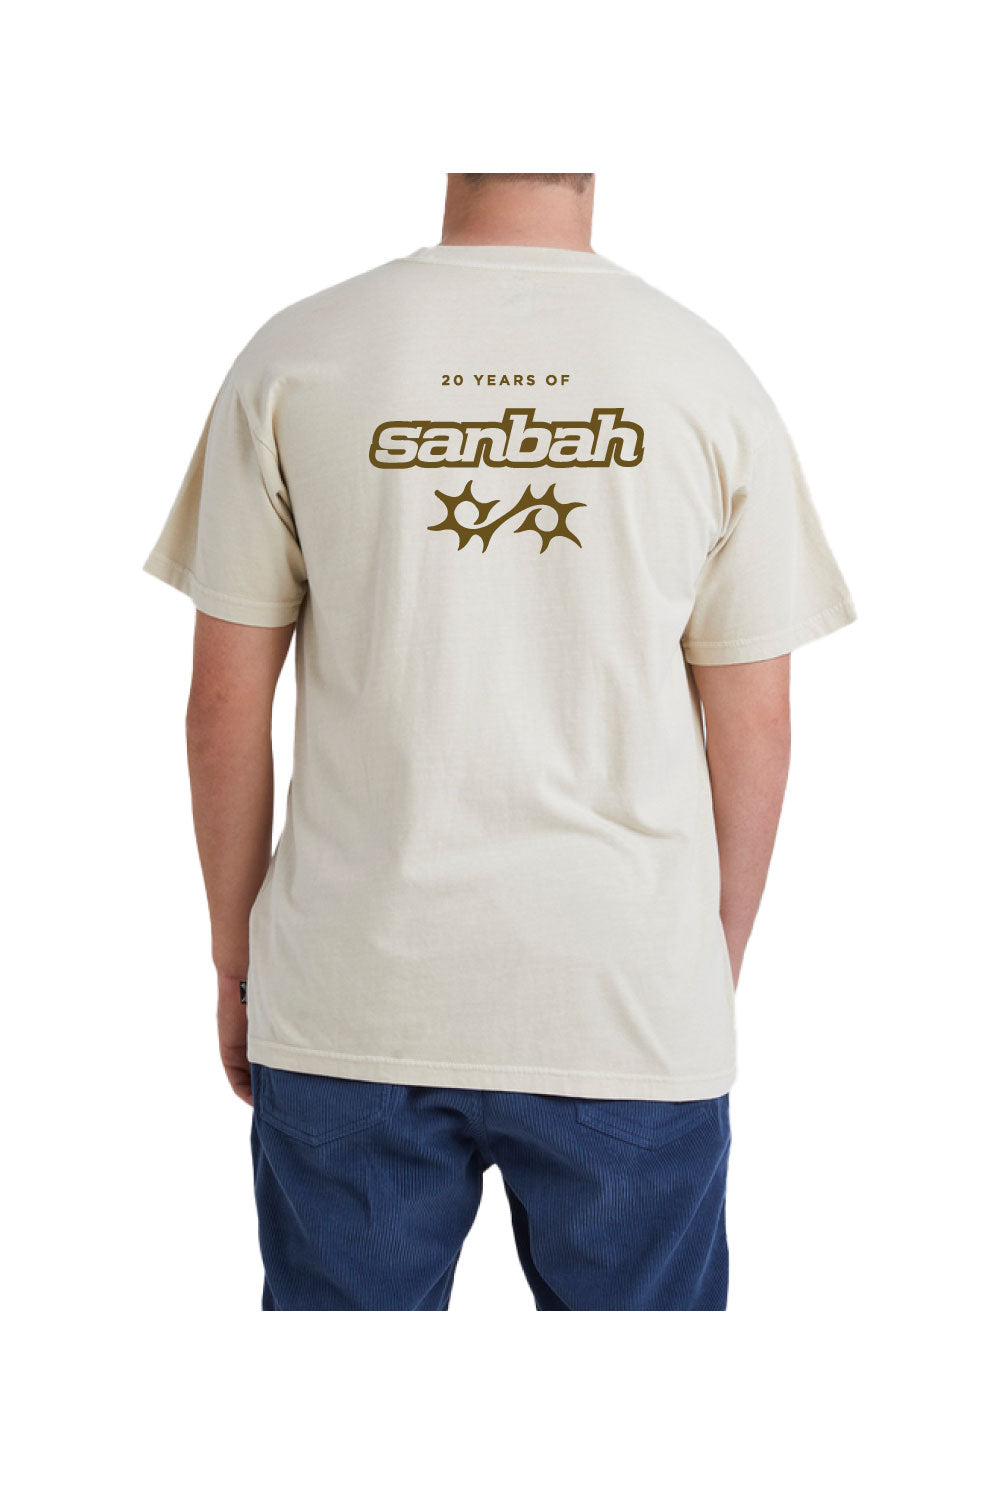 Sanbah 20 Years T-Shirt